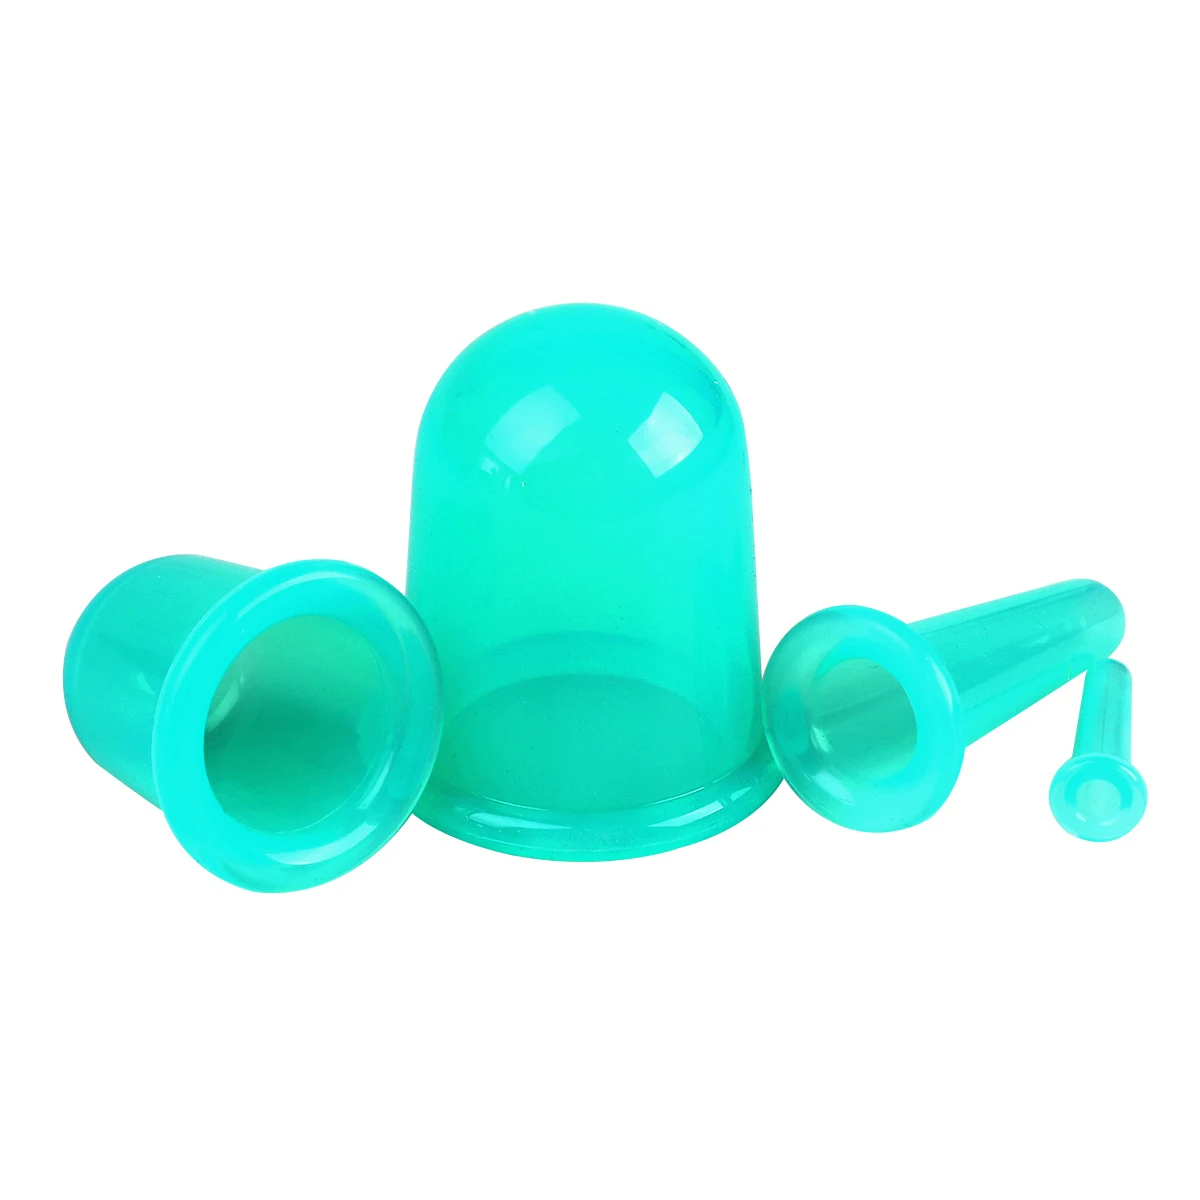 4 шт. силиконовый массажер для лица Набор банок вакуумные массажные чашки для тела целлюлитная терапия лица всасывания чашки Комплект тела помощник - Цвет: Зеленый